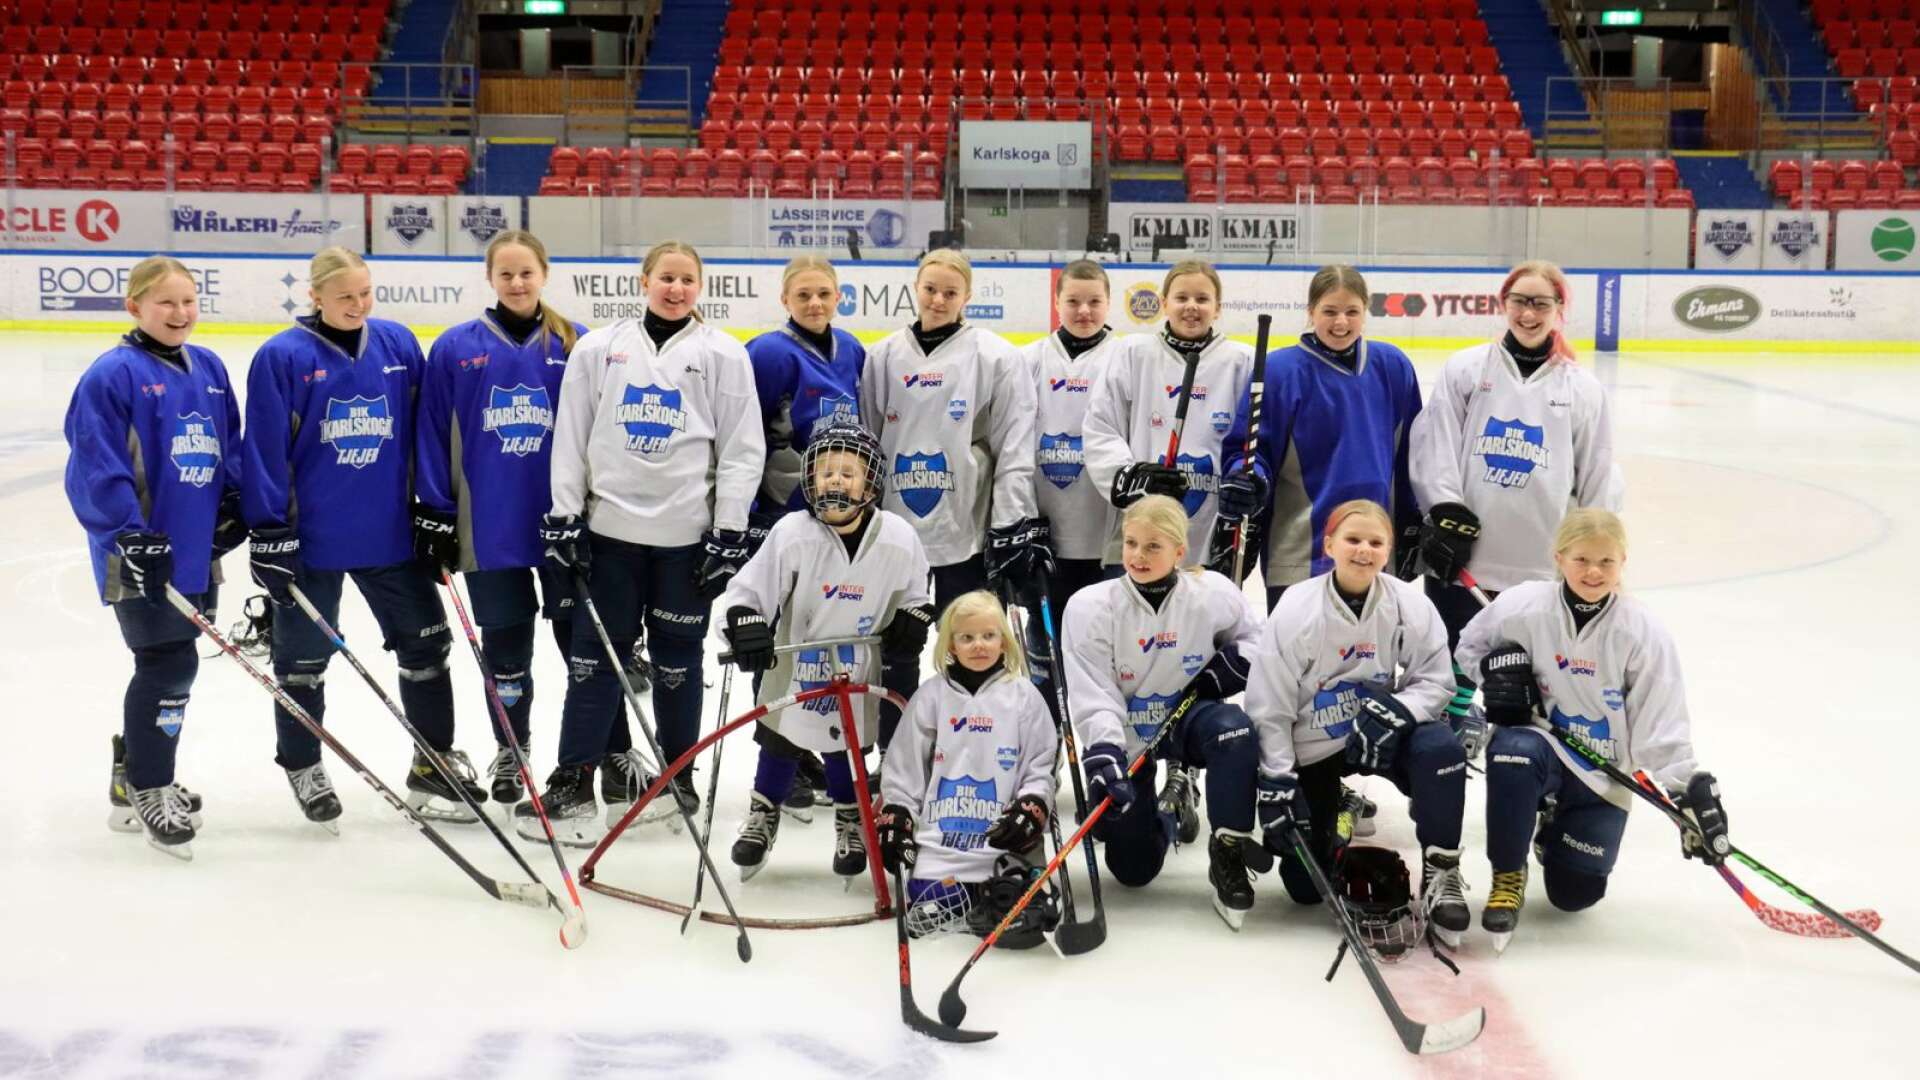 Här ses 14 potentiella spelare i ett framtida damlag i BIK Karlskoga. 